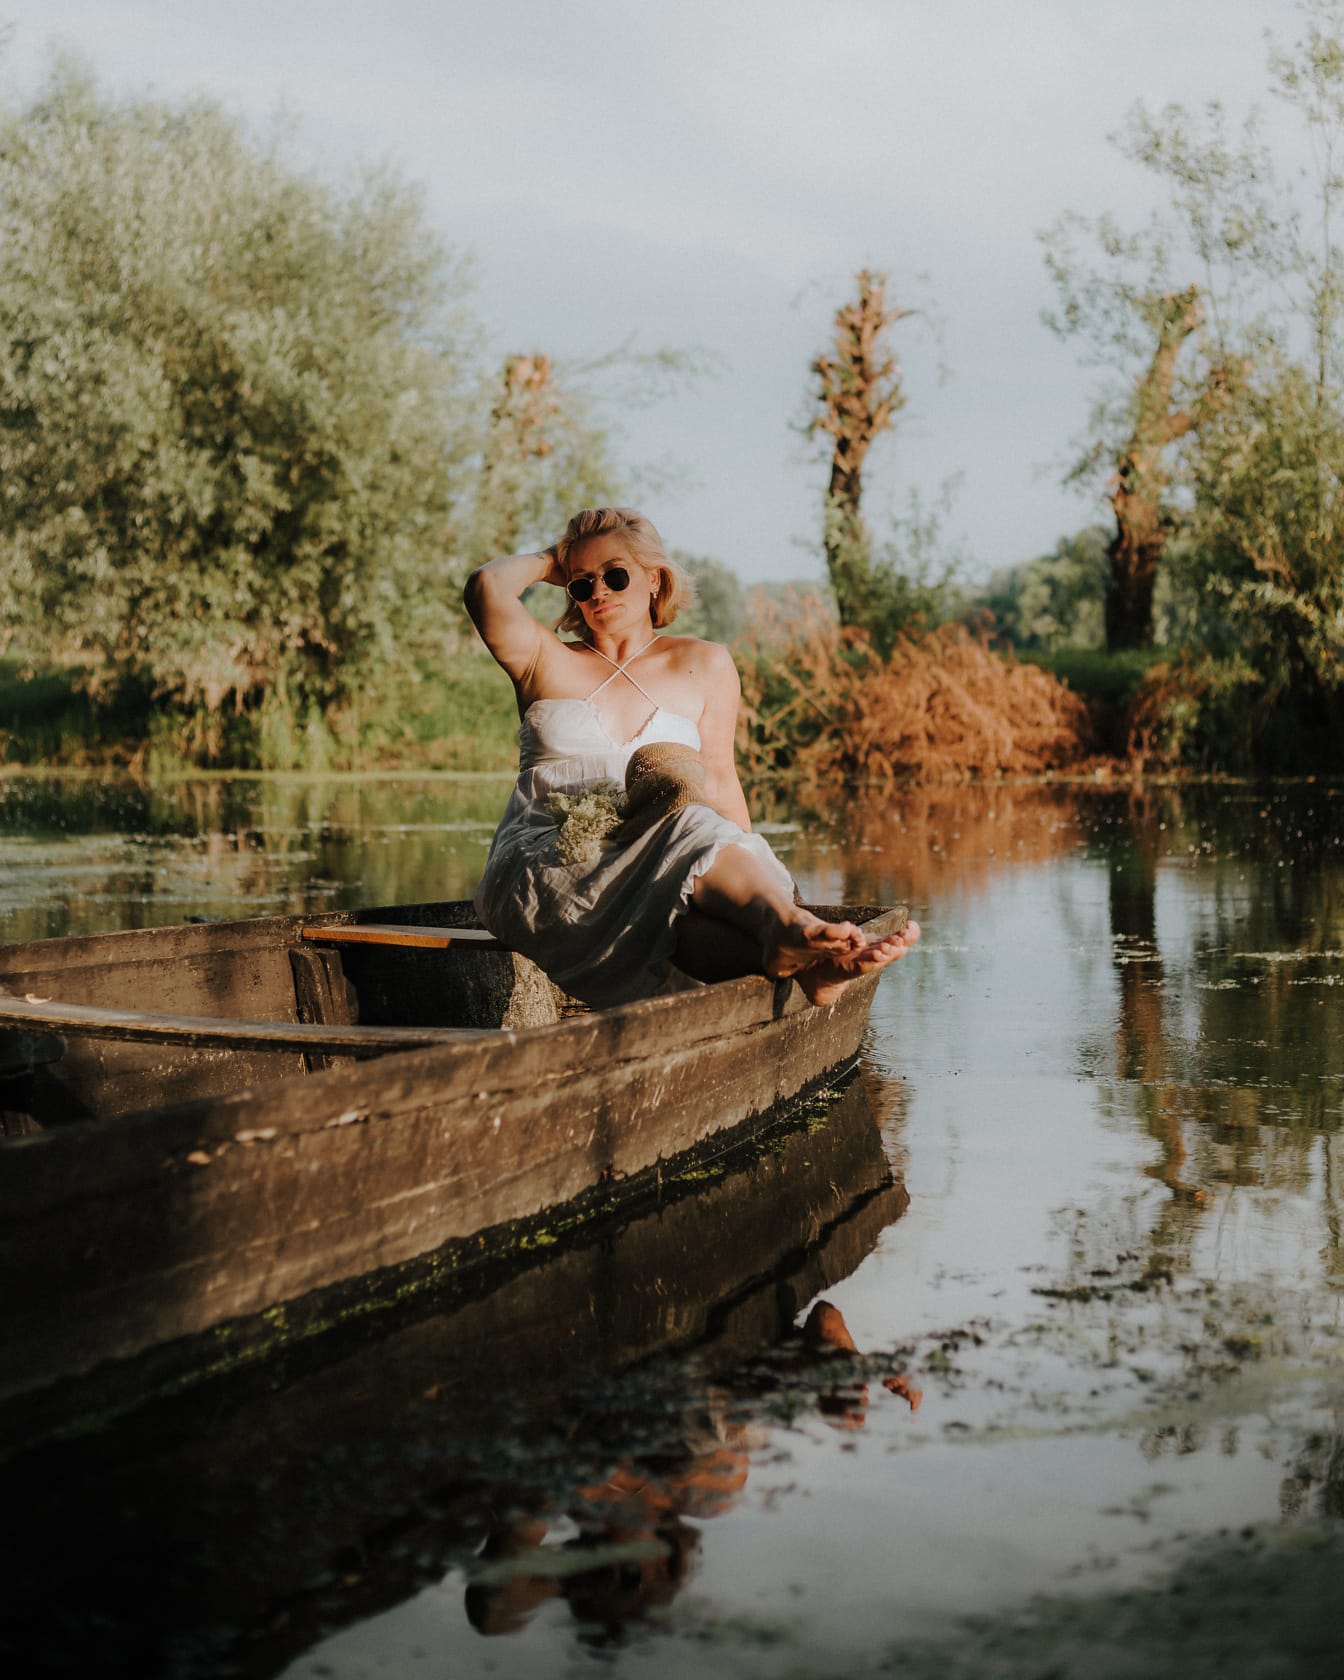 Πανέμορφη κυρία που κάθεται σε ξύλινη βάρκα δίπλα στη λίμνη